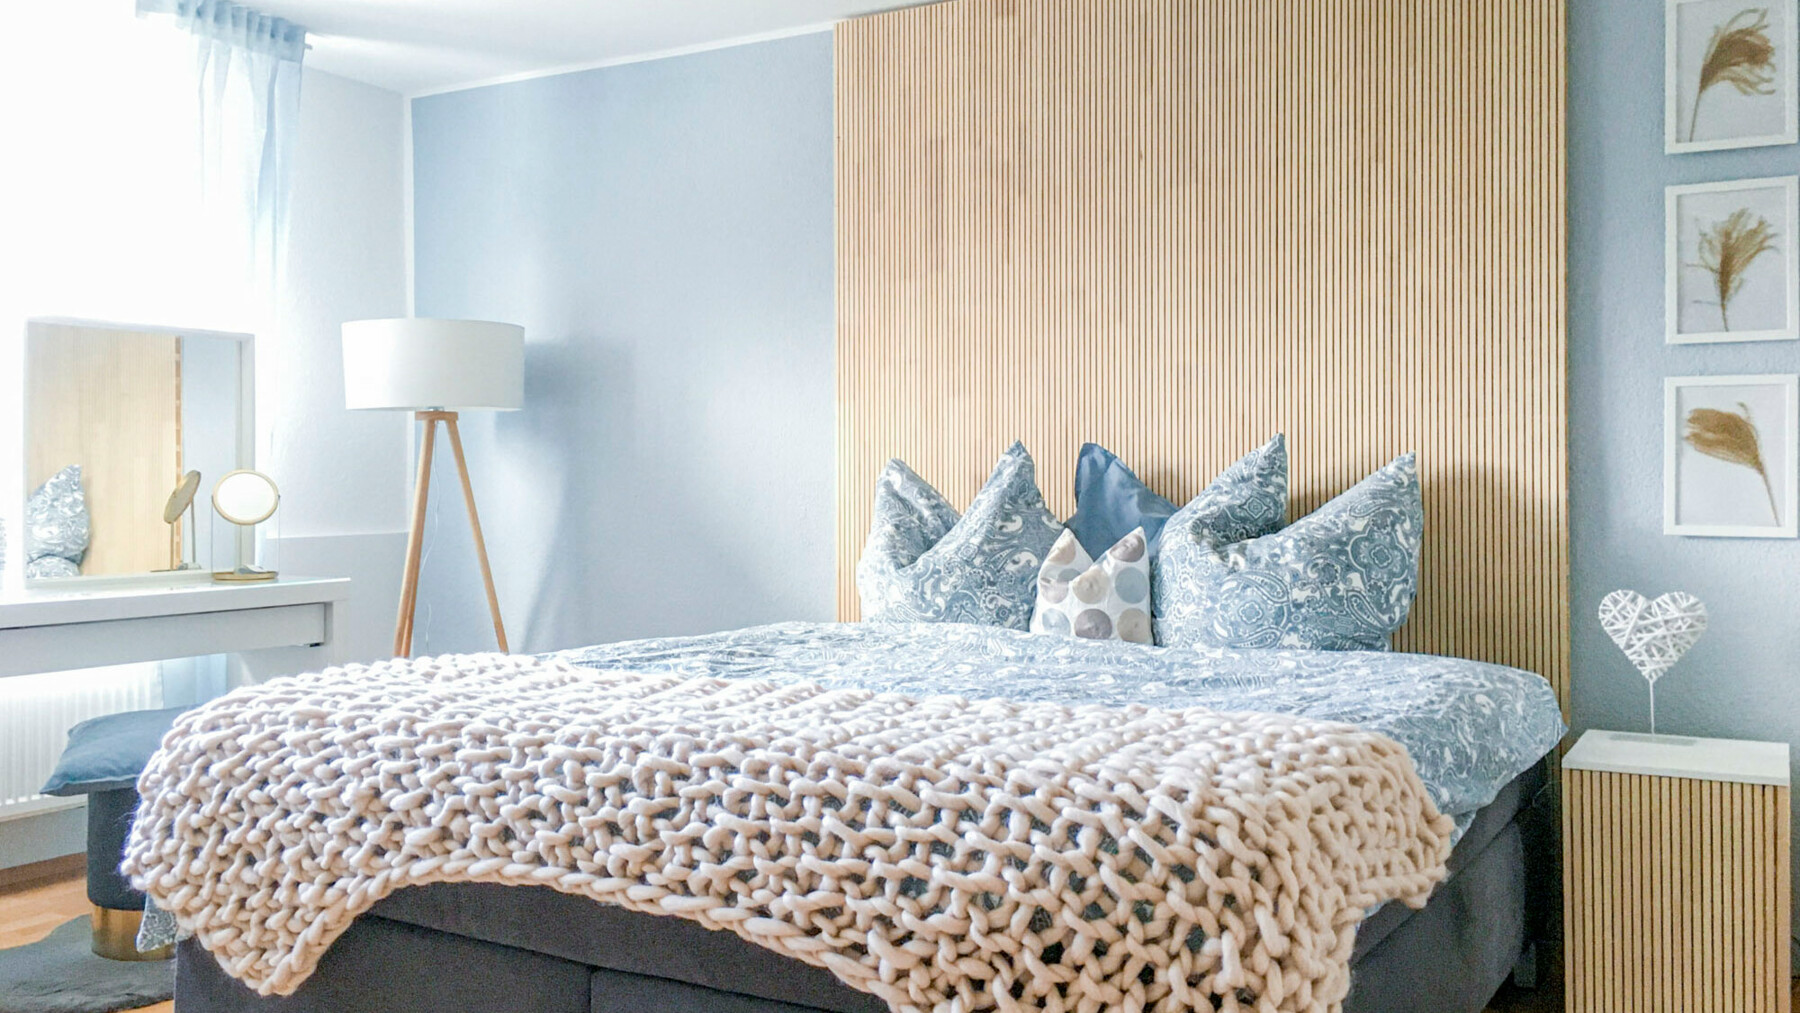 LIGNO® Akustik home als punktuelle Maßnahme für gute Raumakustik und optisches Highlight aus Holz im Schlafzimmer in einem Einfamilienhaus im Landkreis Hof